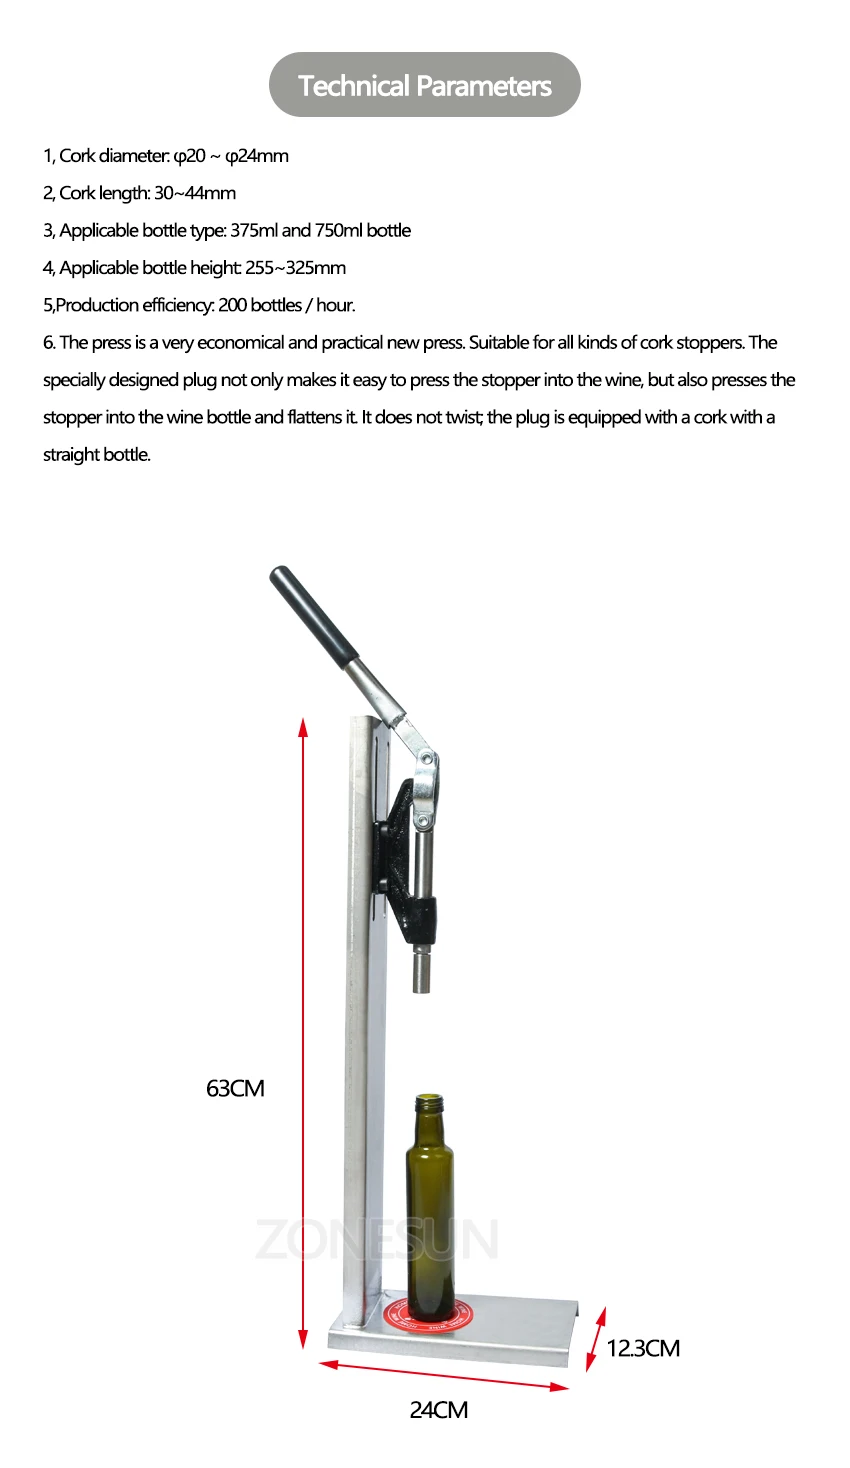 machine dimension of manual corking machine